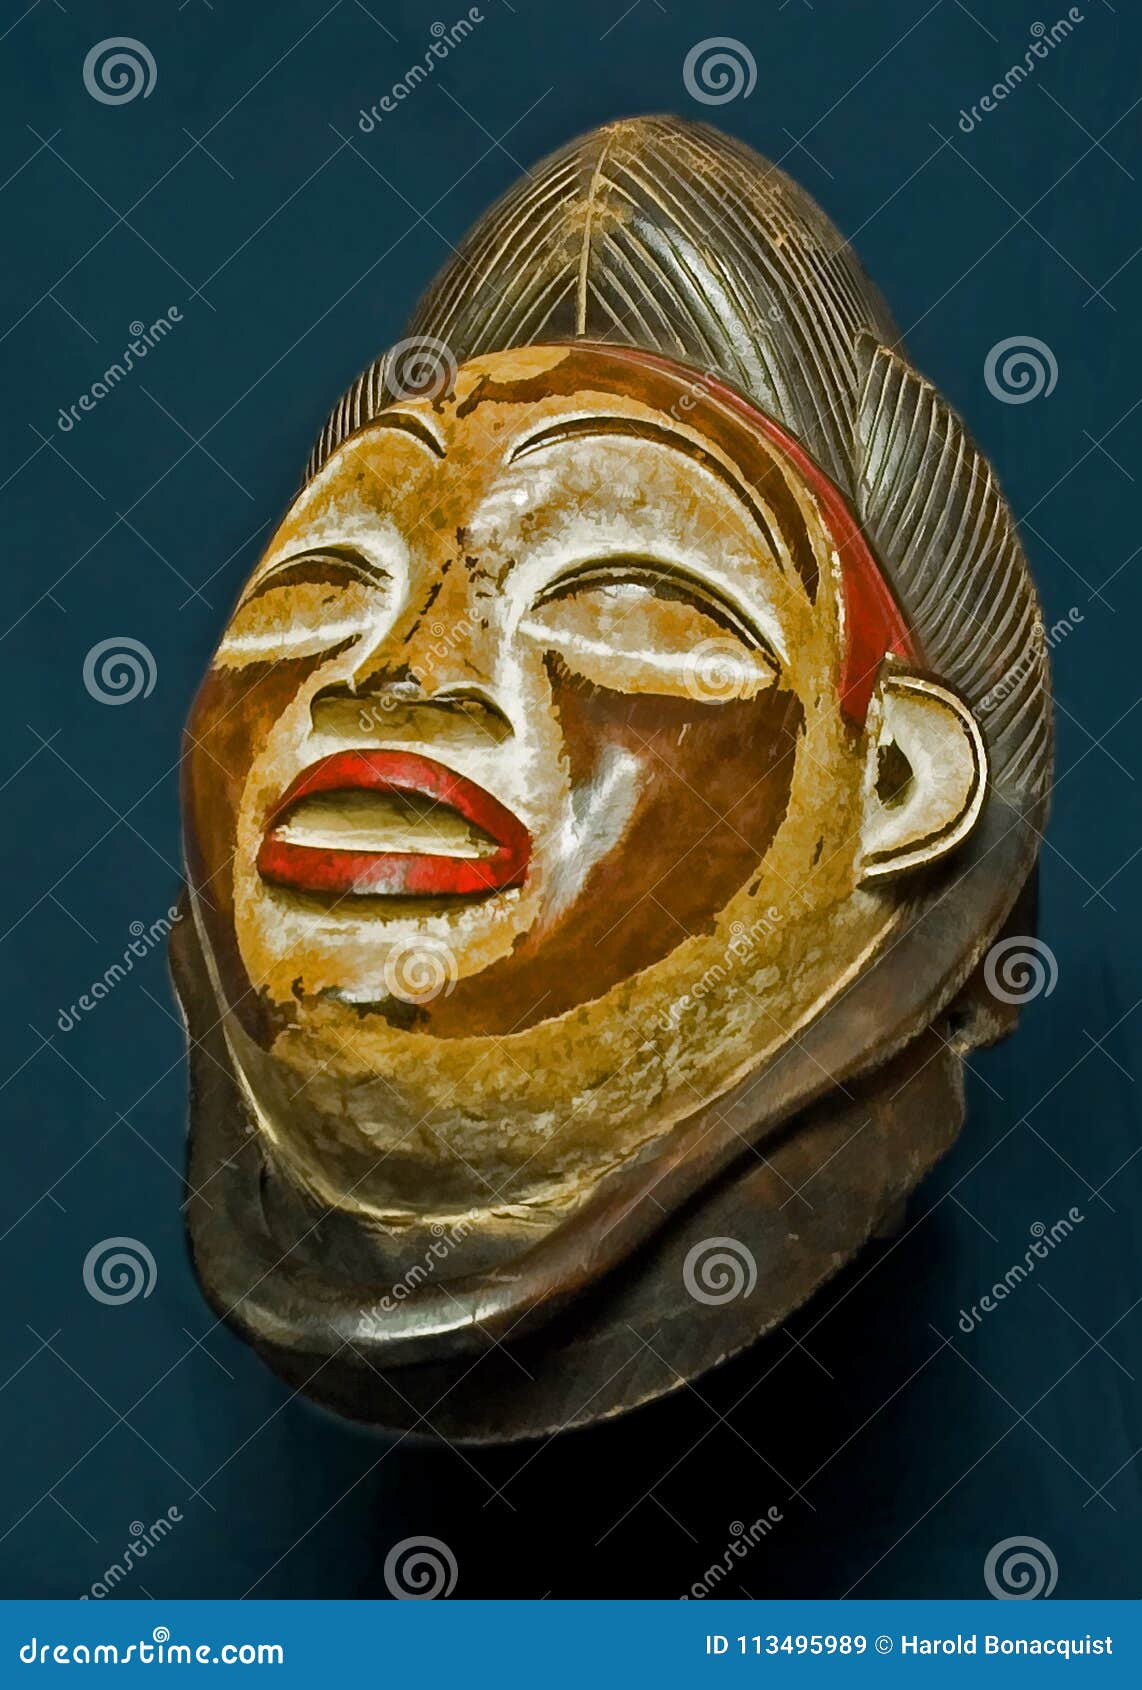 Sporvogn Overbevisende Tordenvejr African Wooden Mask stock image. Image of wood, indigenous - 113495989